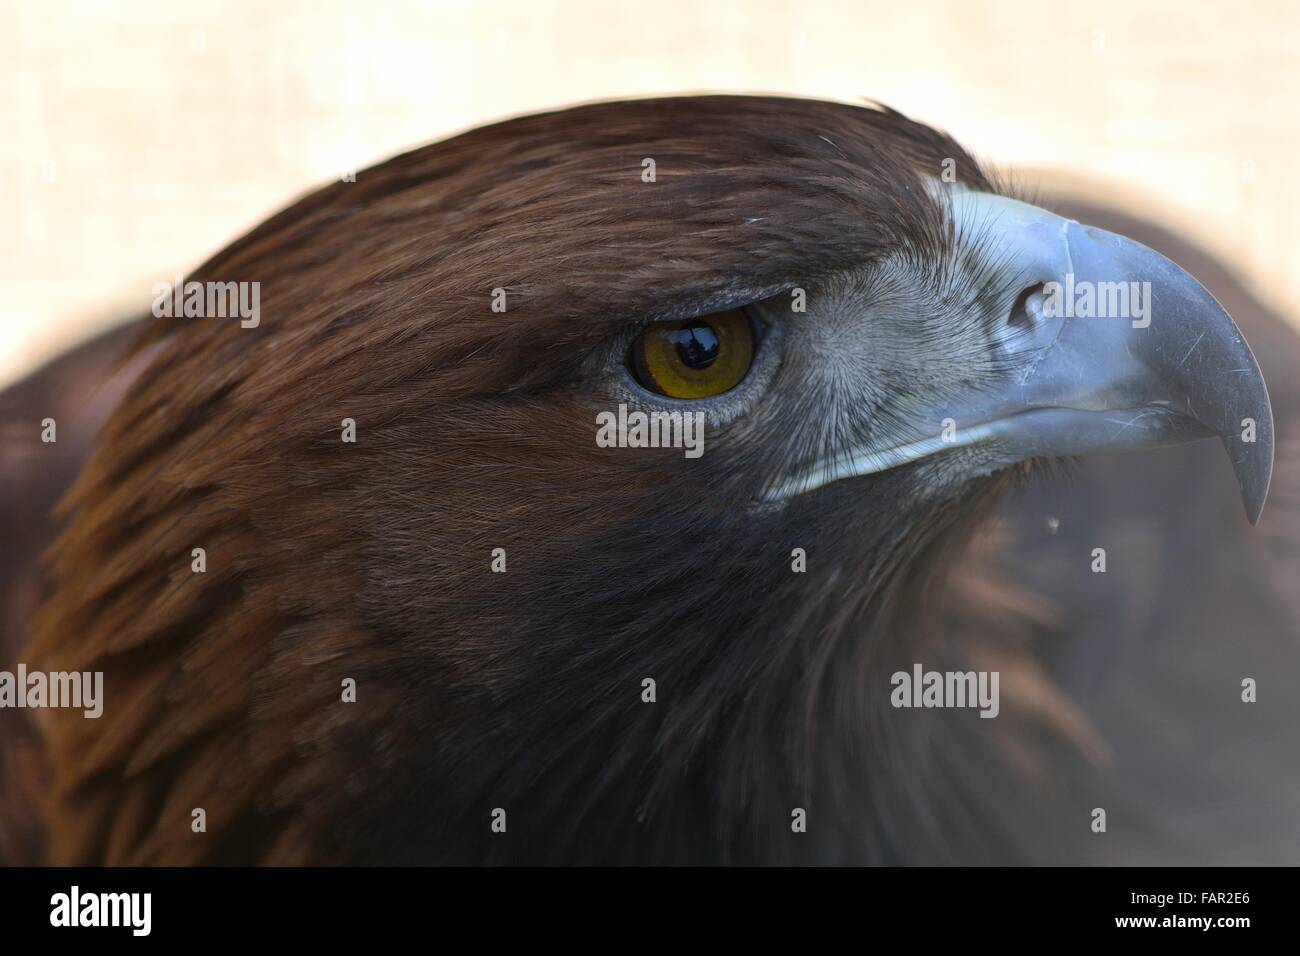 Aquila reale (Aquila chrysaetos) close-up di testa. Un captive bird con chiara visione di occhio giallo e becco a gancio Foto Stock